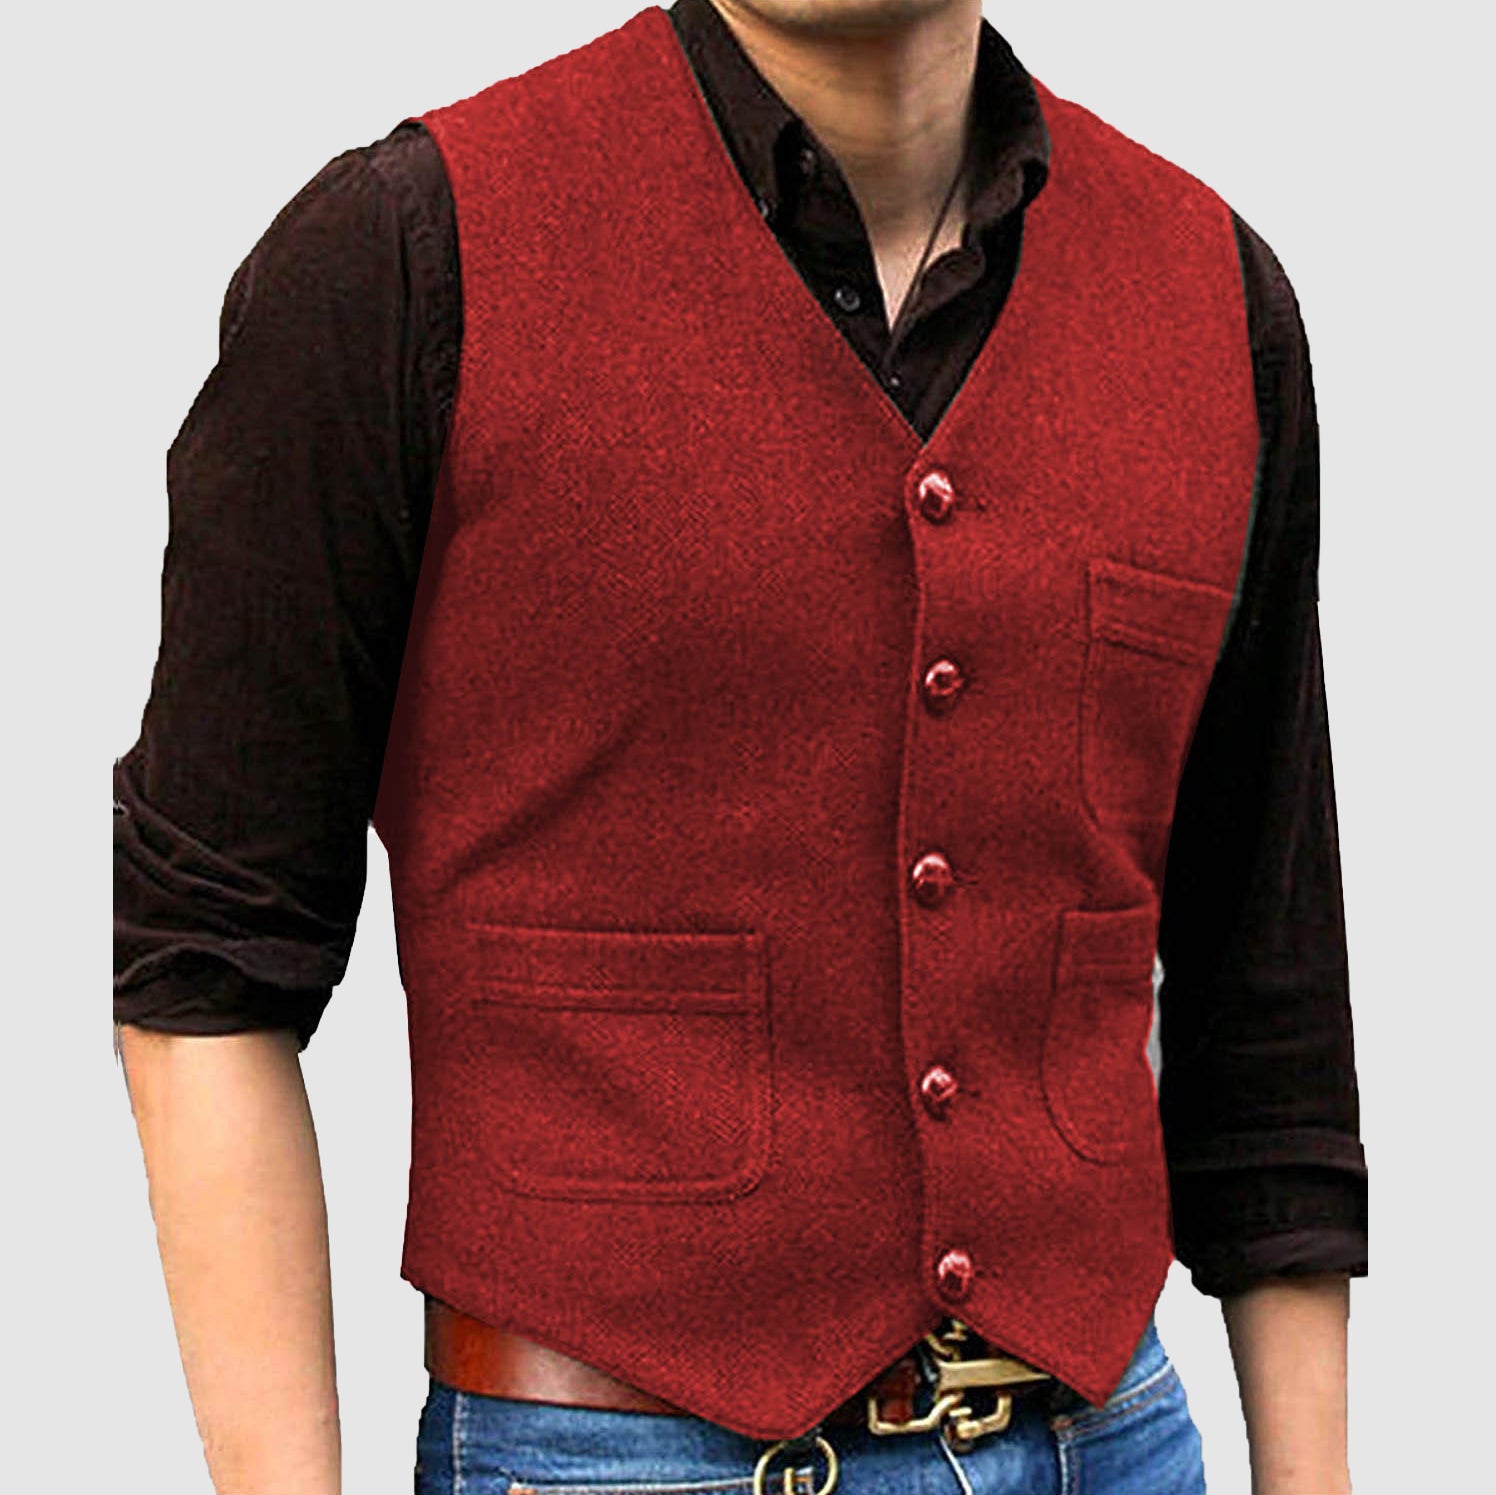 Men's Casual Sleeveless Multi-Pocket Vest